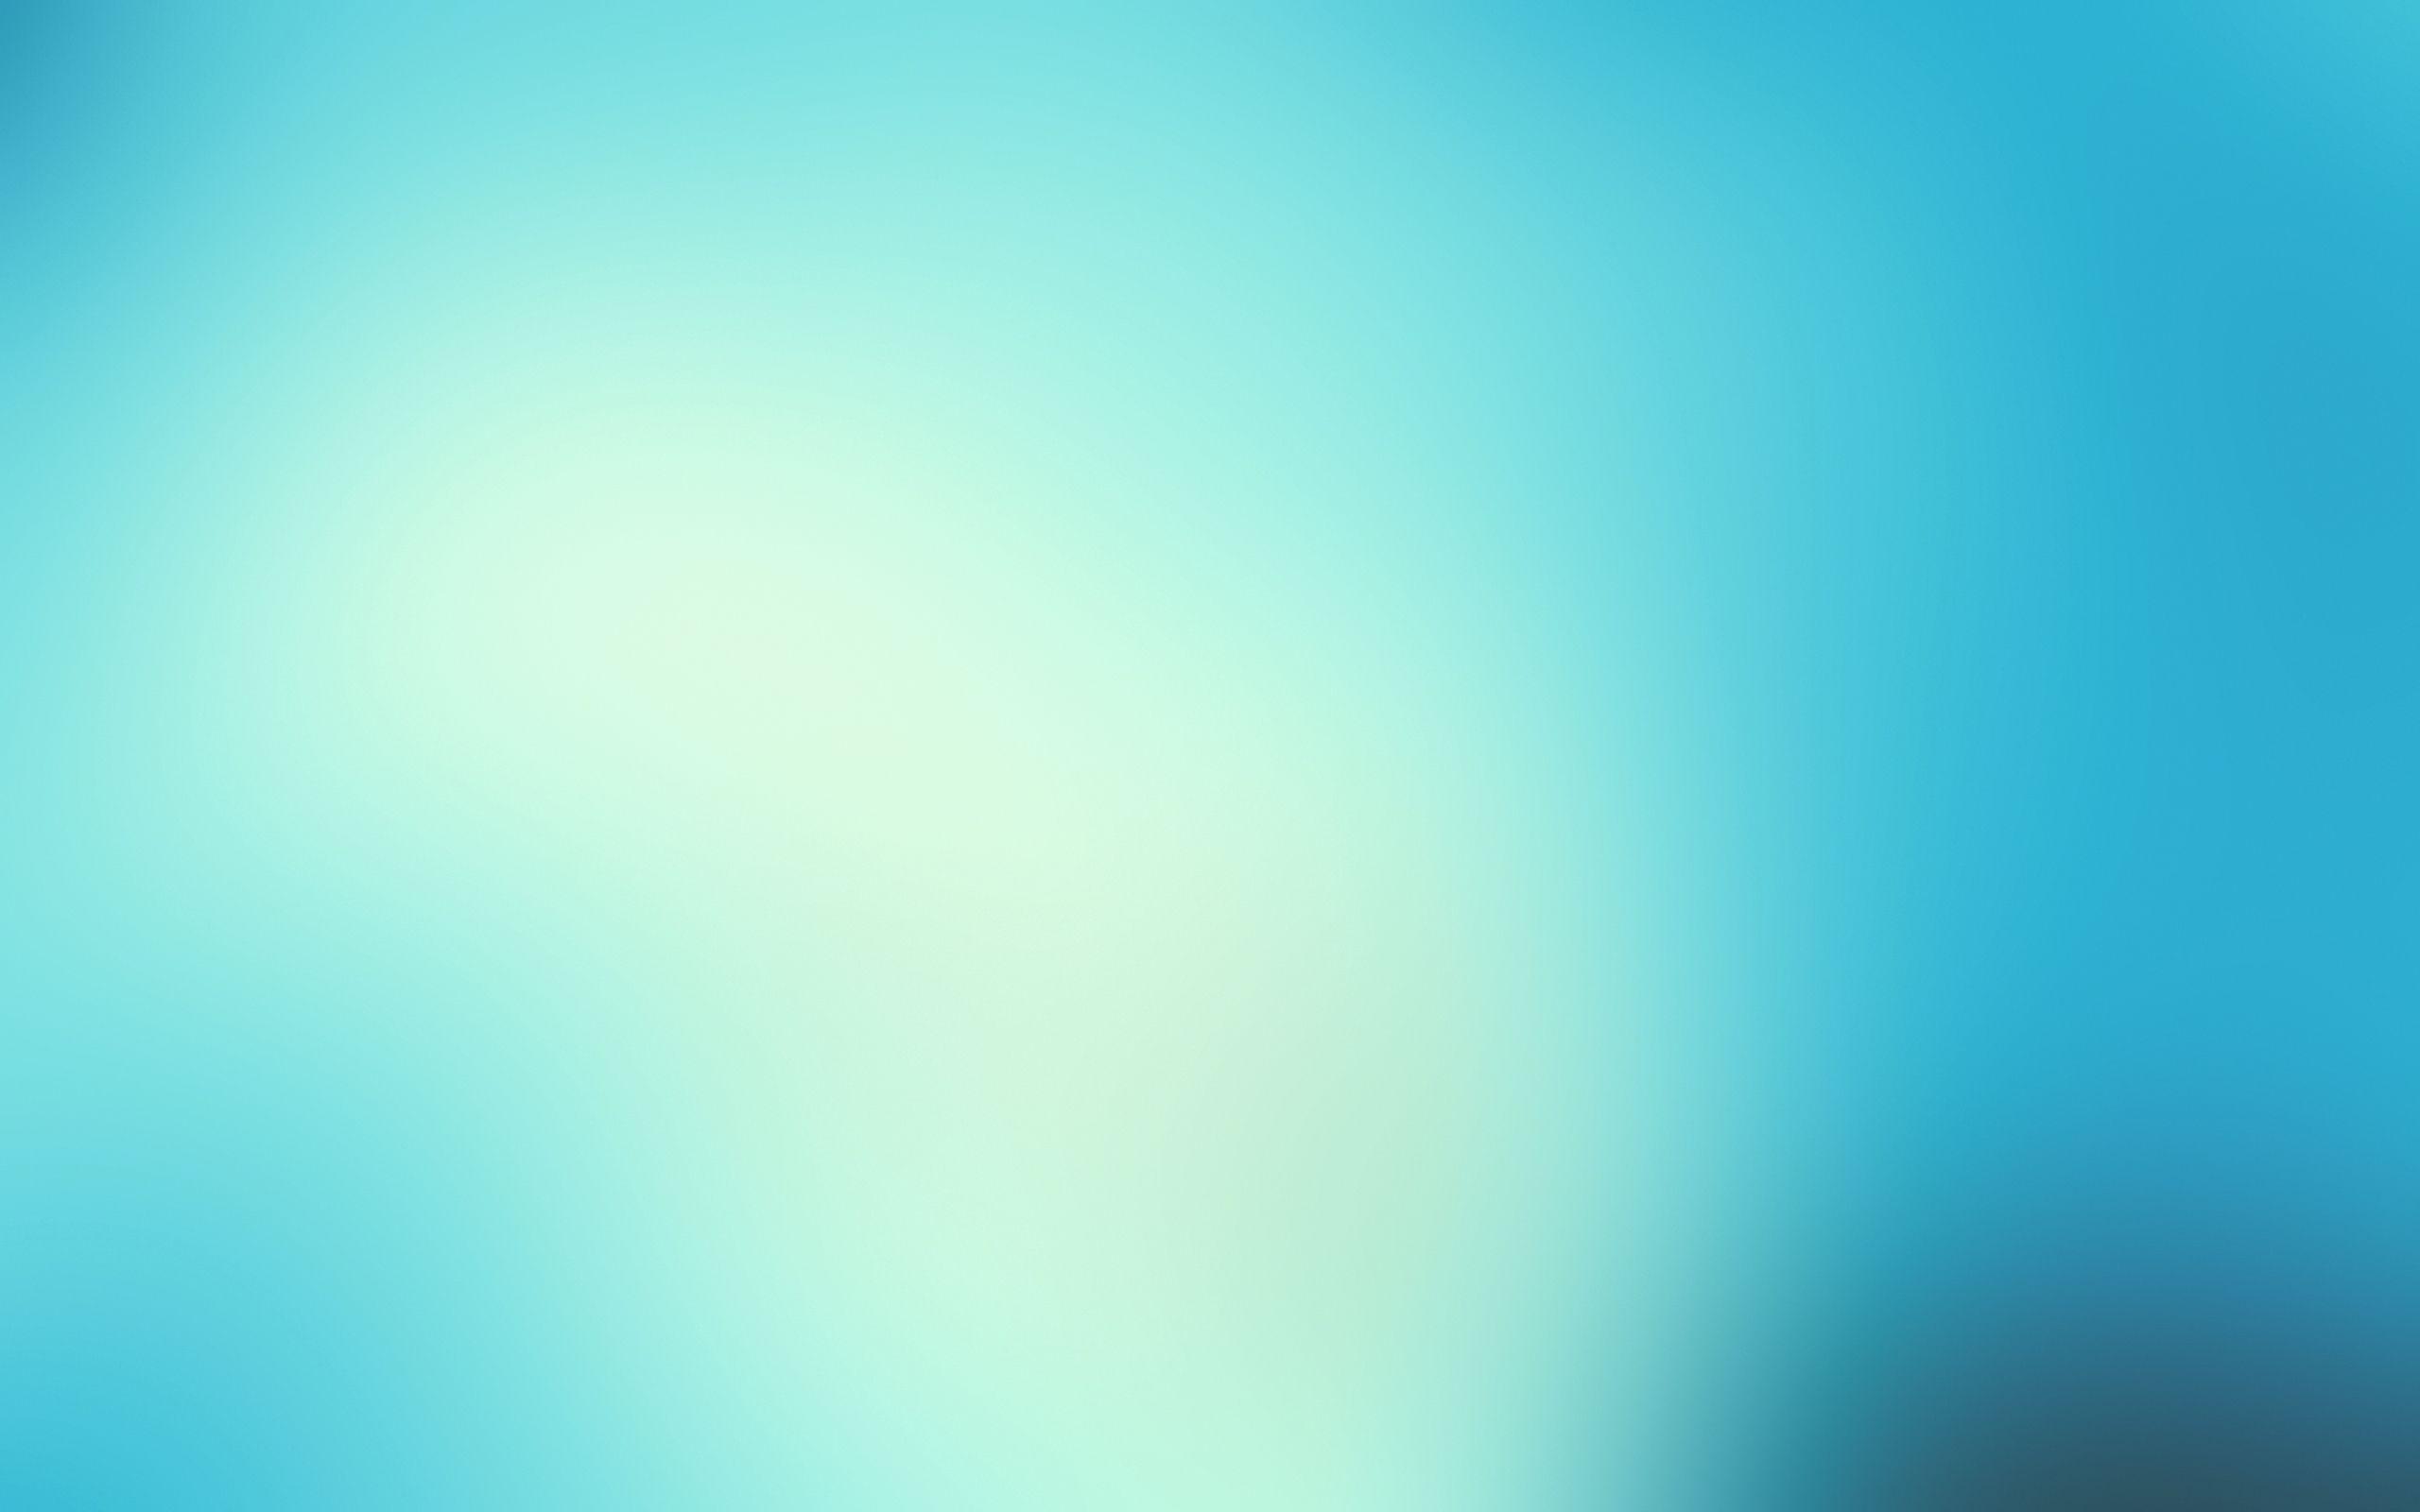 Light Blue Wallpaper 7837 2560x1600 px